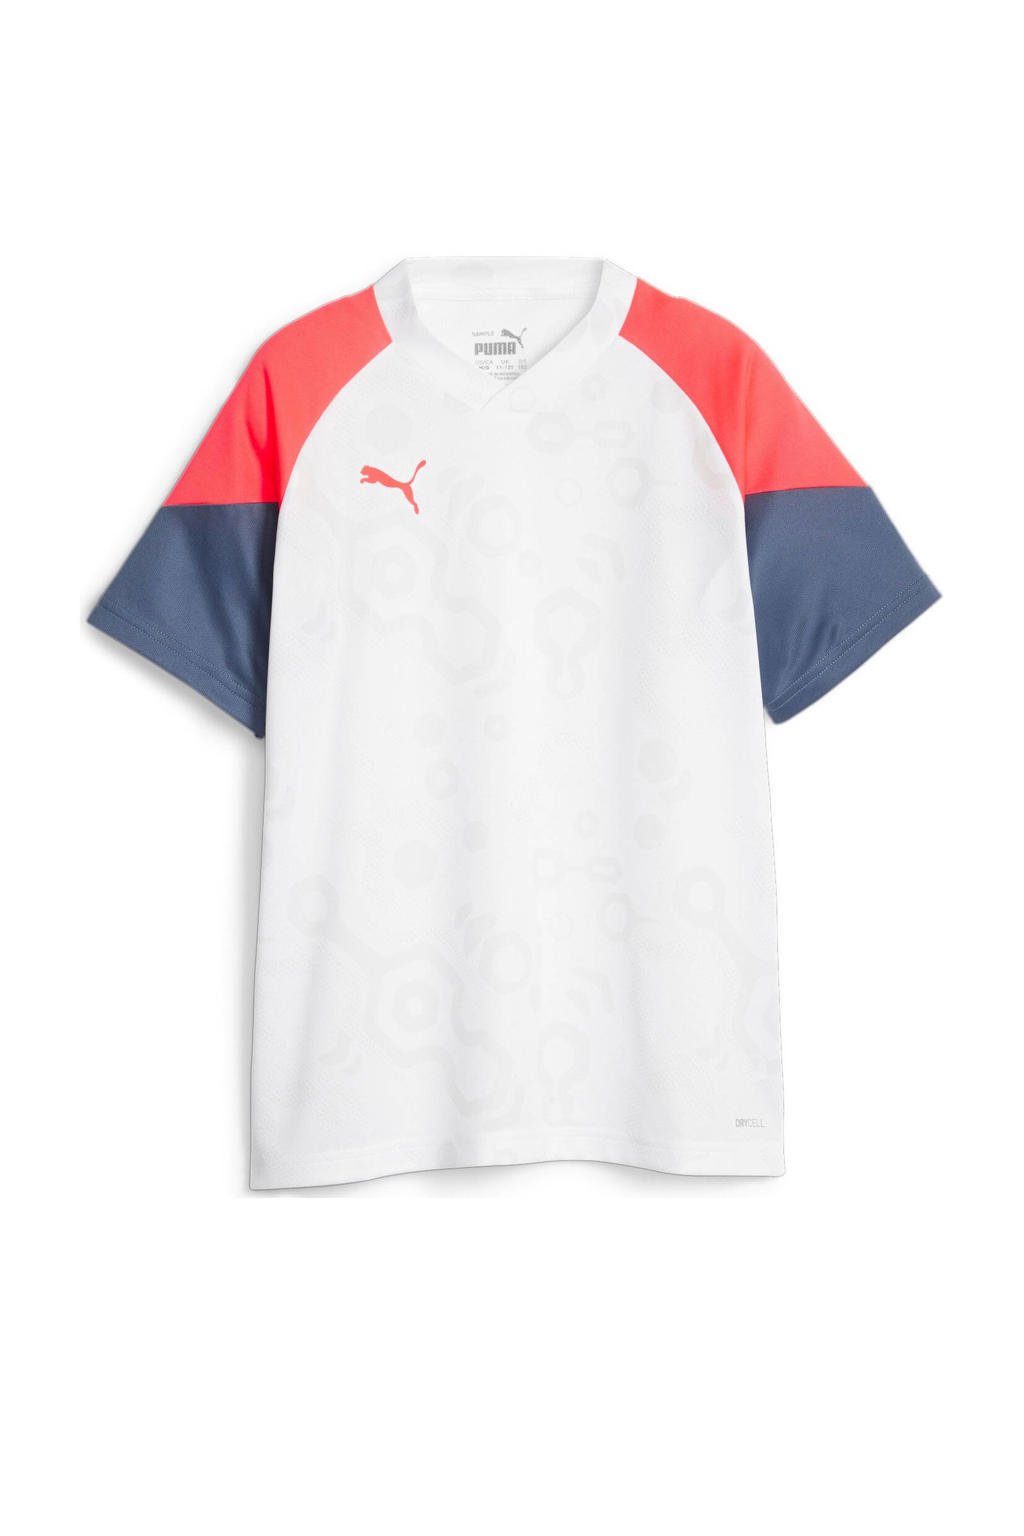 Wit, rood en donkerblauwe jongens en meisjes Puma Junior voetbalshirt van polyester met meerkleurige print, korte mouwen en V-hals